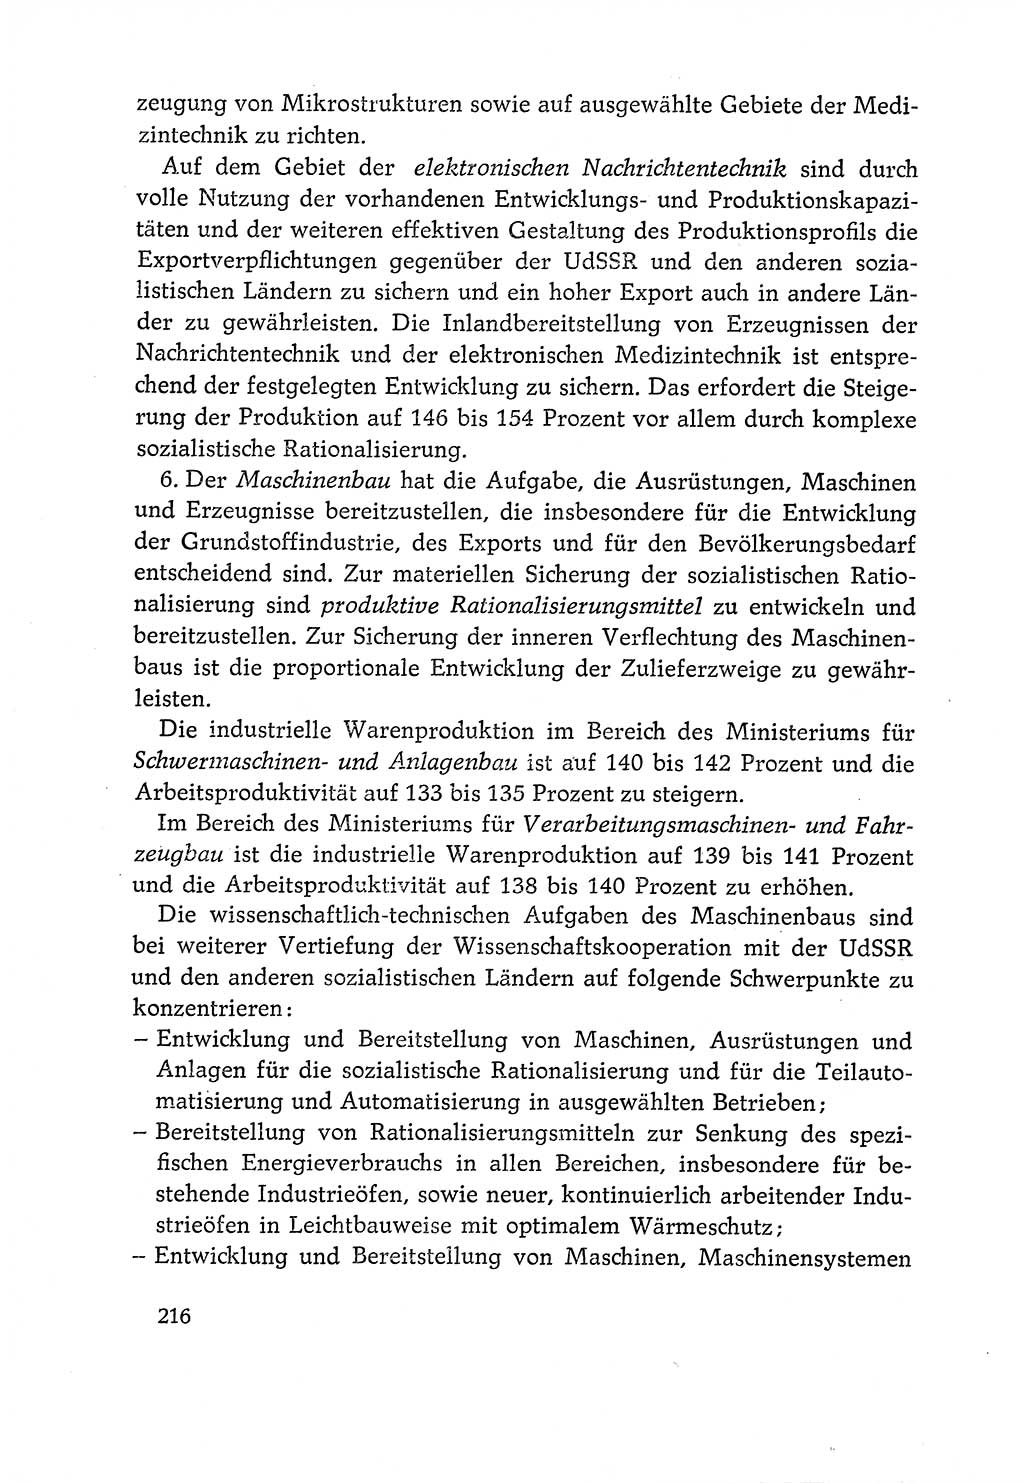 Dokumente der Sozialistischen Einheitspartei Deutschlands (SED) [Deutsche Demokratische Republik (DDR)] 1970-1971, Seite 216 (Dok. SED DDR 1970-1971, S. 216)